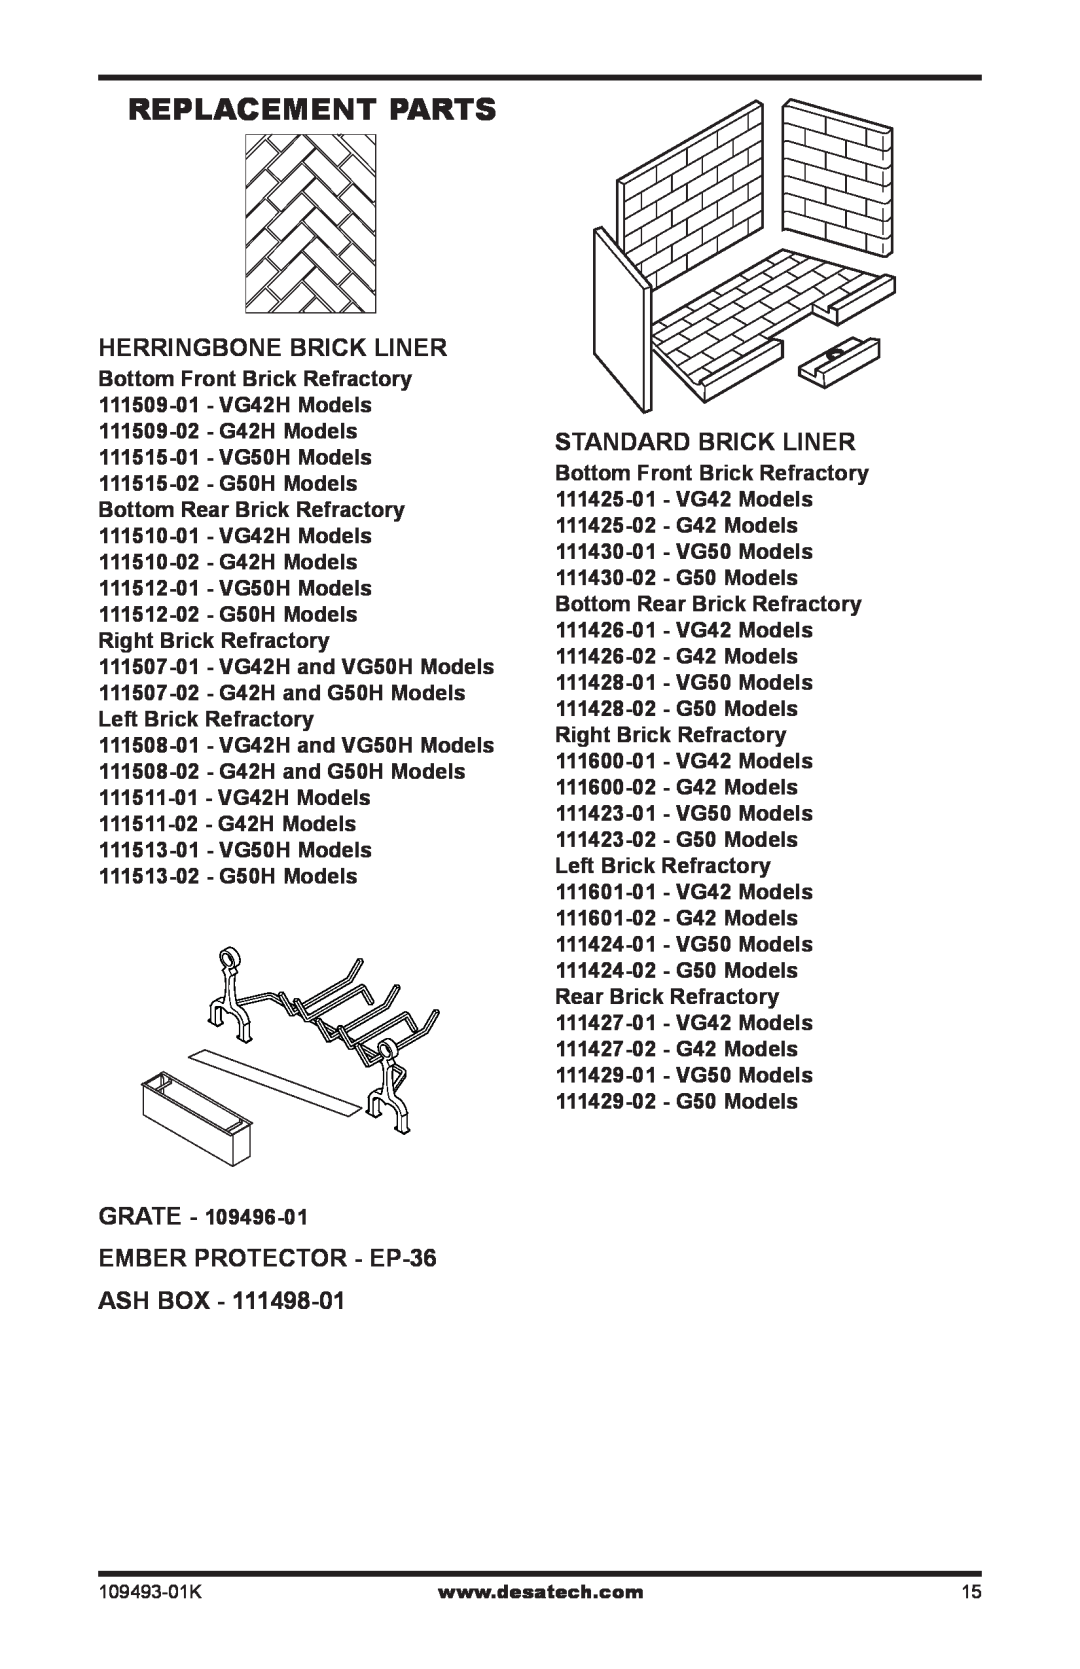 Desa ICBO# 3507 Replacement Parts, Herringbone Brick Liner, Ember Protector - EP-36 Ash Box, StandarD Brick Liner 